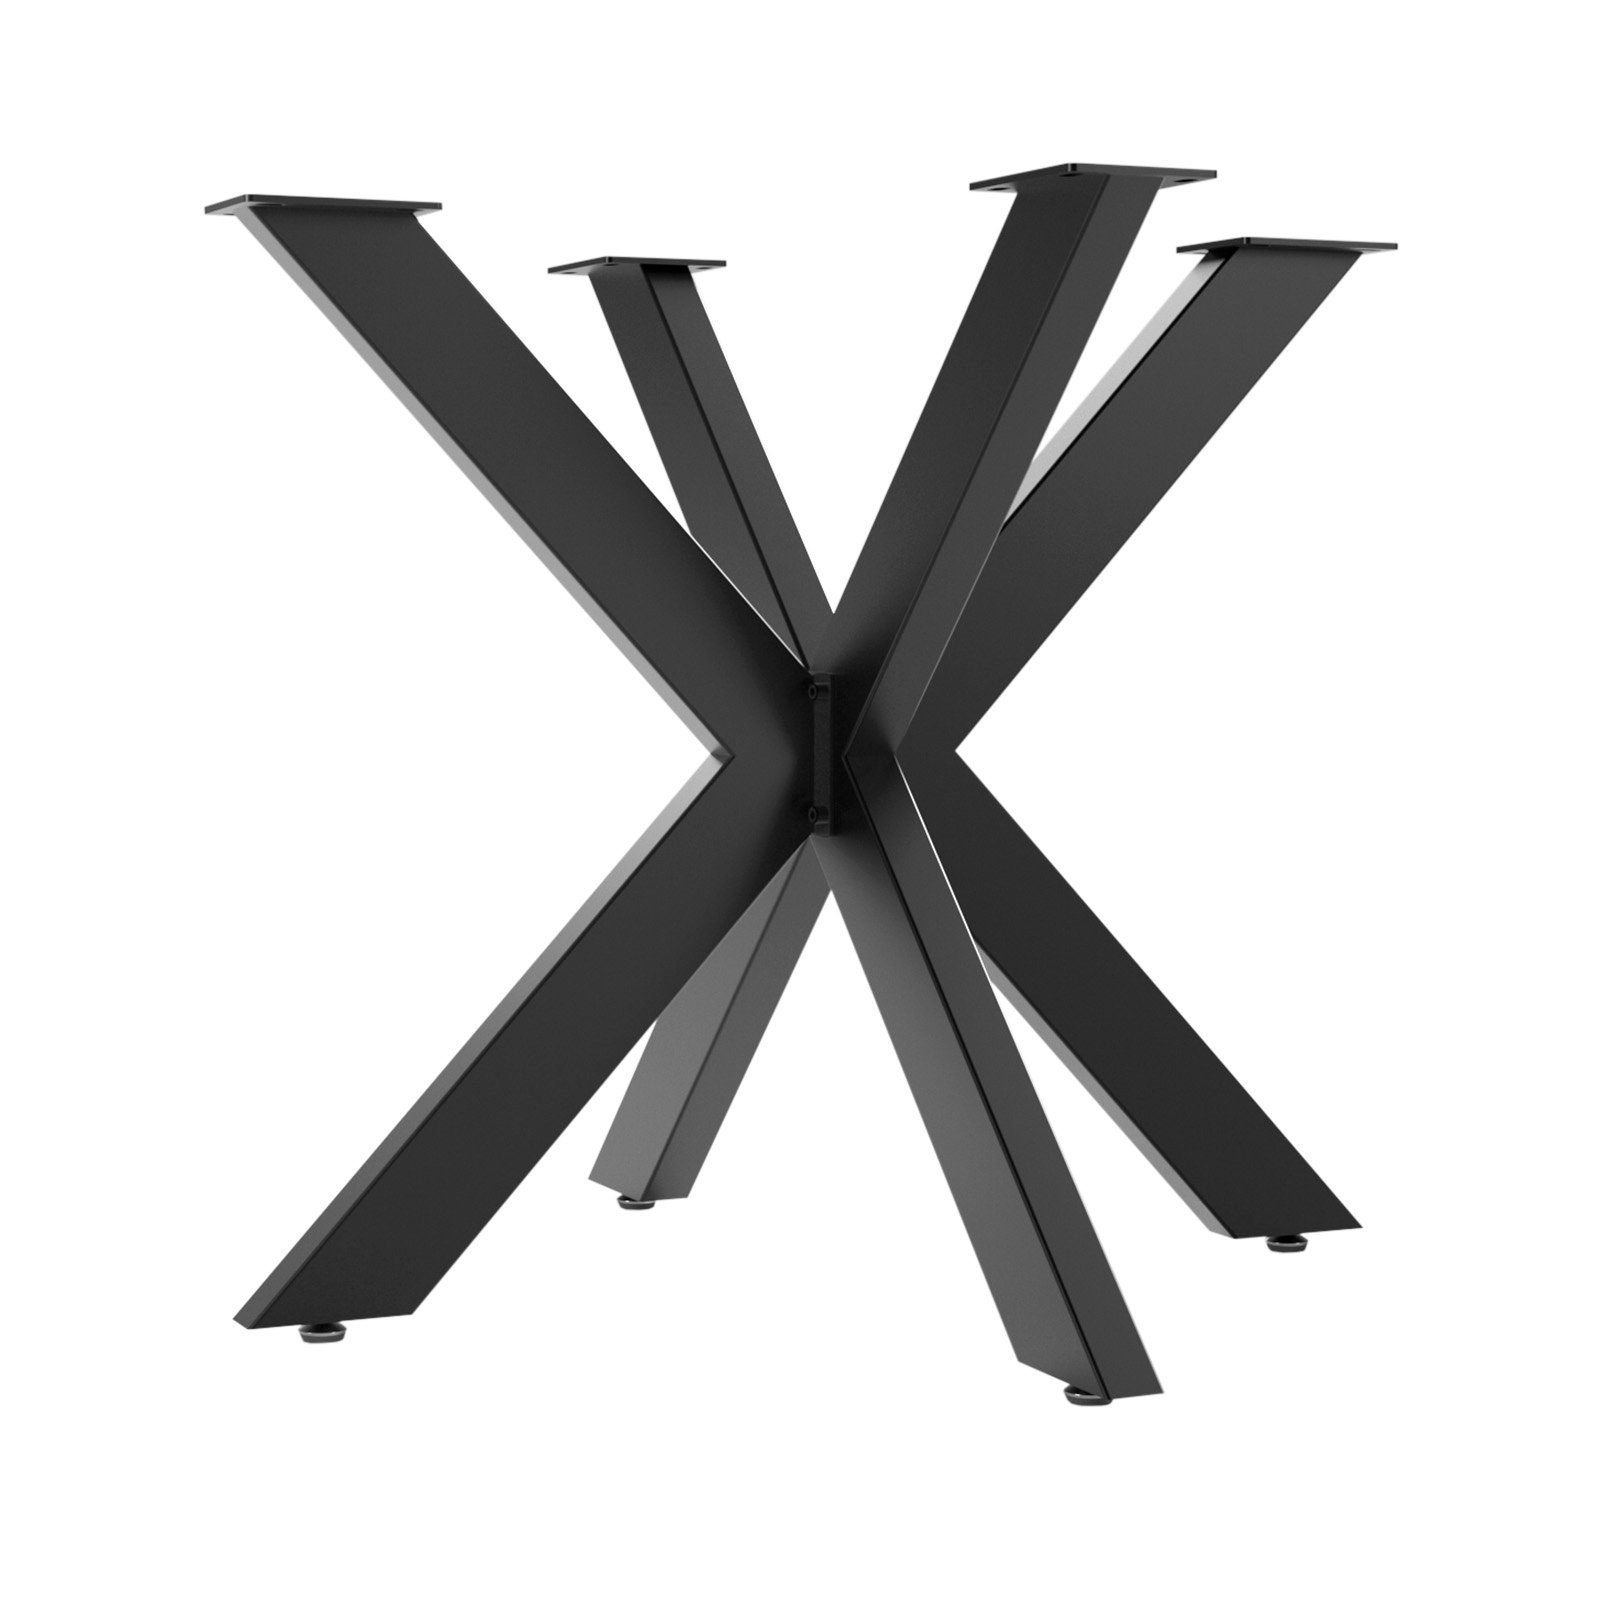 SO-TECH® Tischgestell SPIDER Schwerlast Tischbeine Tischfüße, einfache Montage, H710 x B850 x L850 mm (Esstisch) schwarz